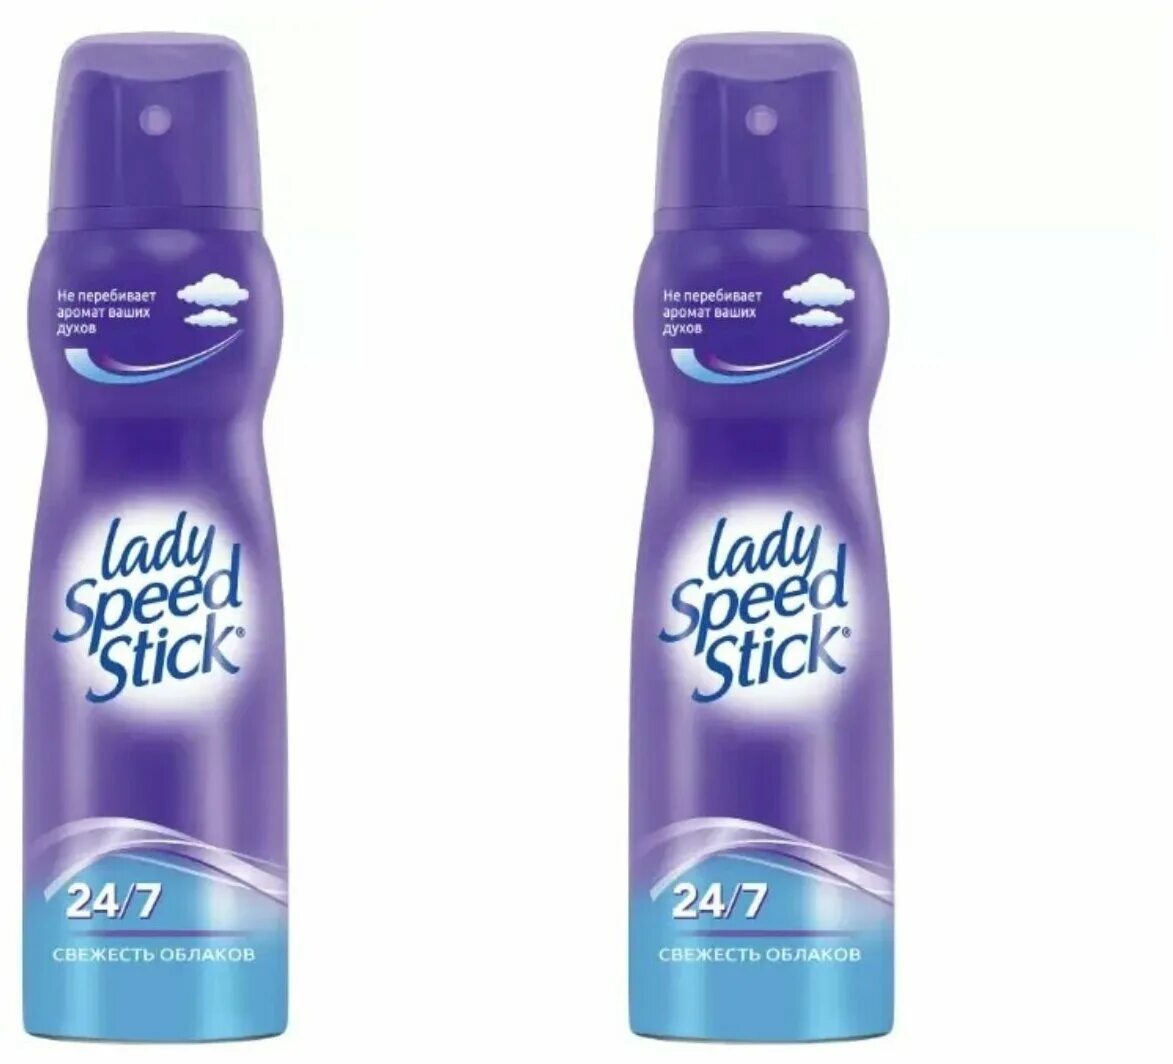 Леди стик дезодорант купить. Дезодорант Lady Speed Stick спрей 150мл. Lady Speed Stick свежесть облаков. Lady Speed Stick дезодорант-спрей 150мл Derma + витамин е. Lady Speed Stick biocontrol.